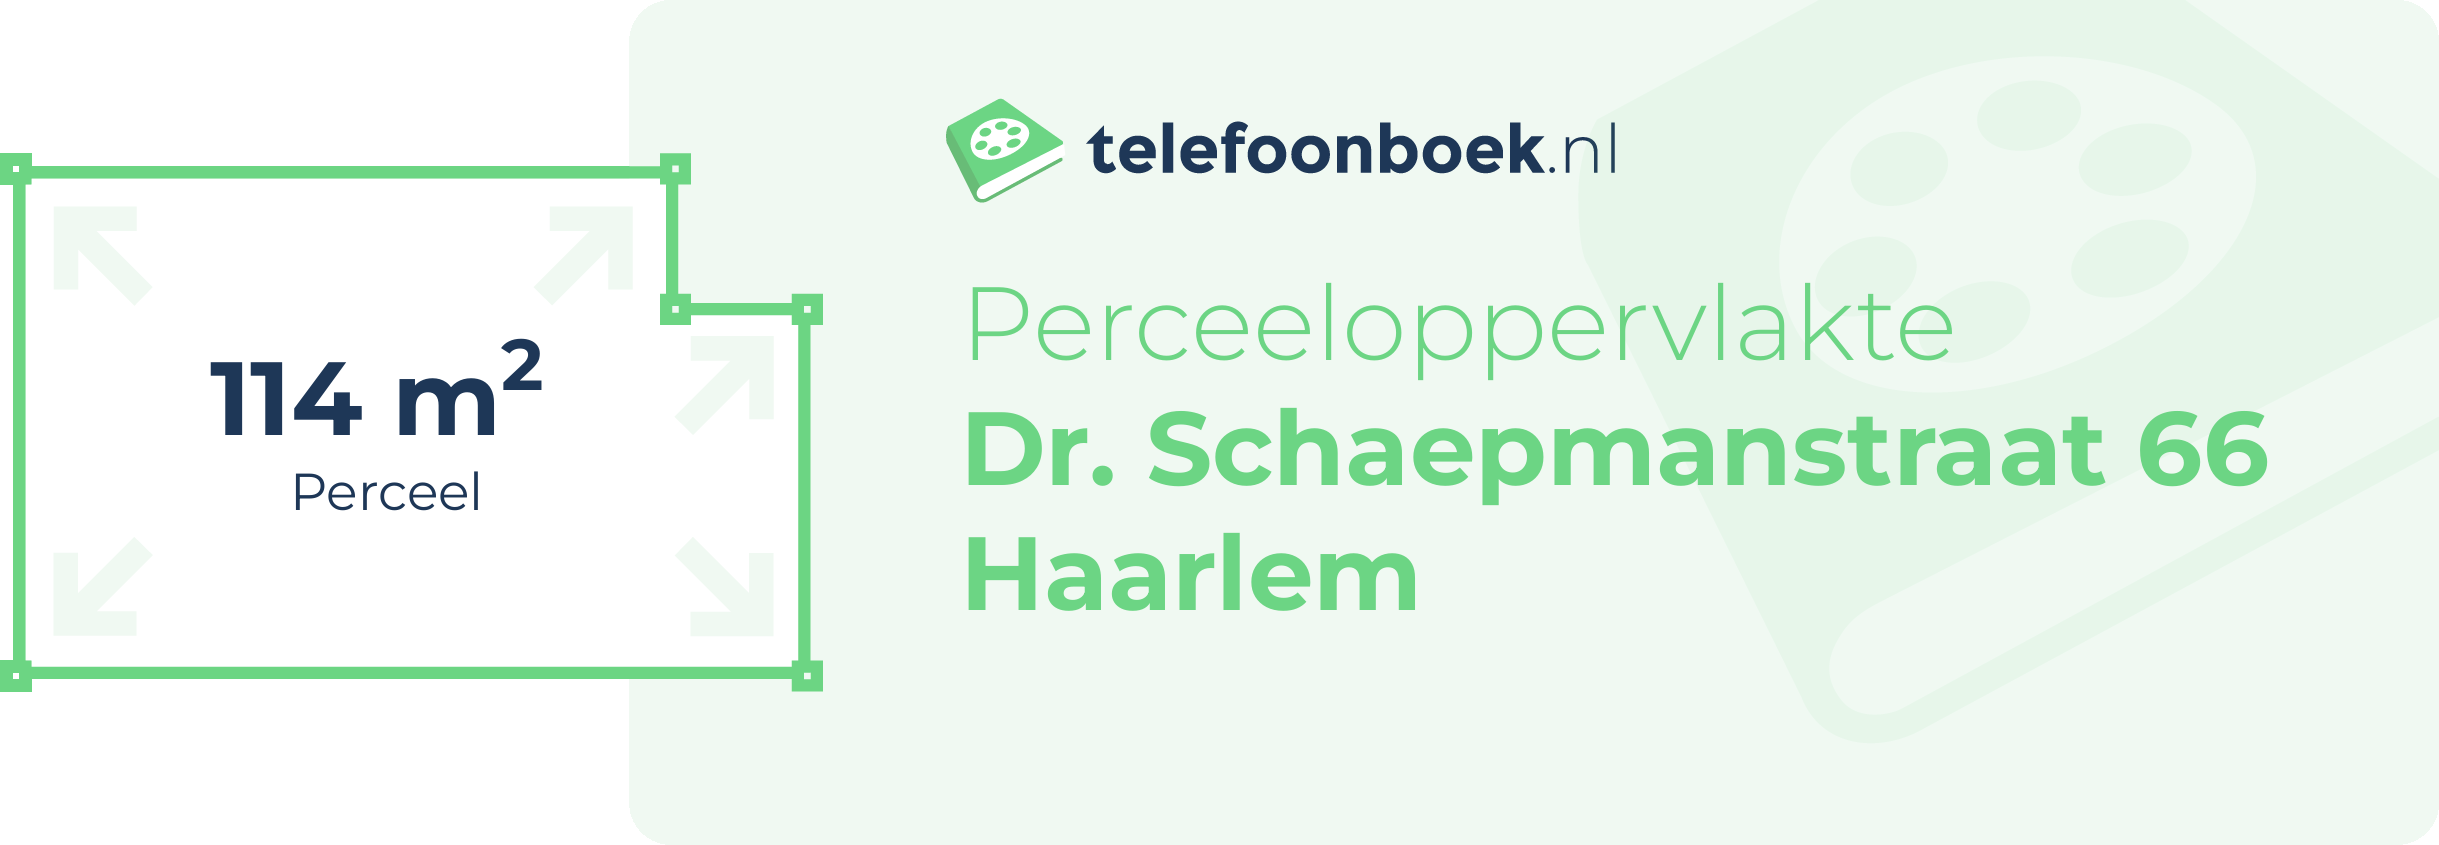 Perceeloppervlakte Dr. Schaepmanstraat 66 Haarlem